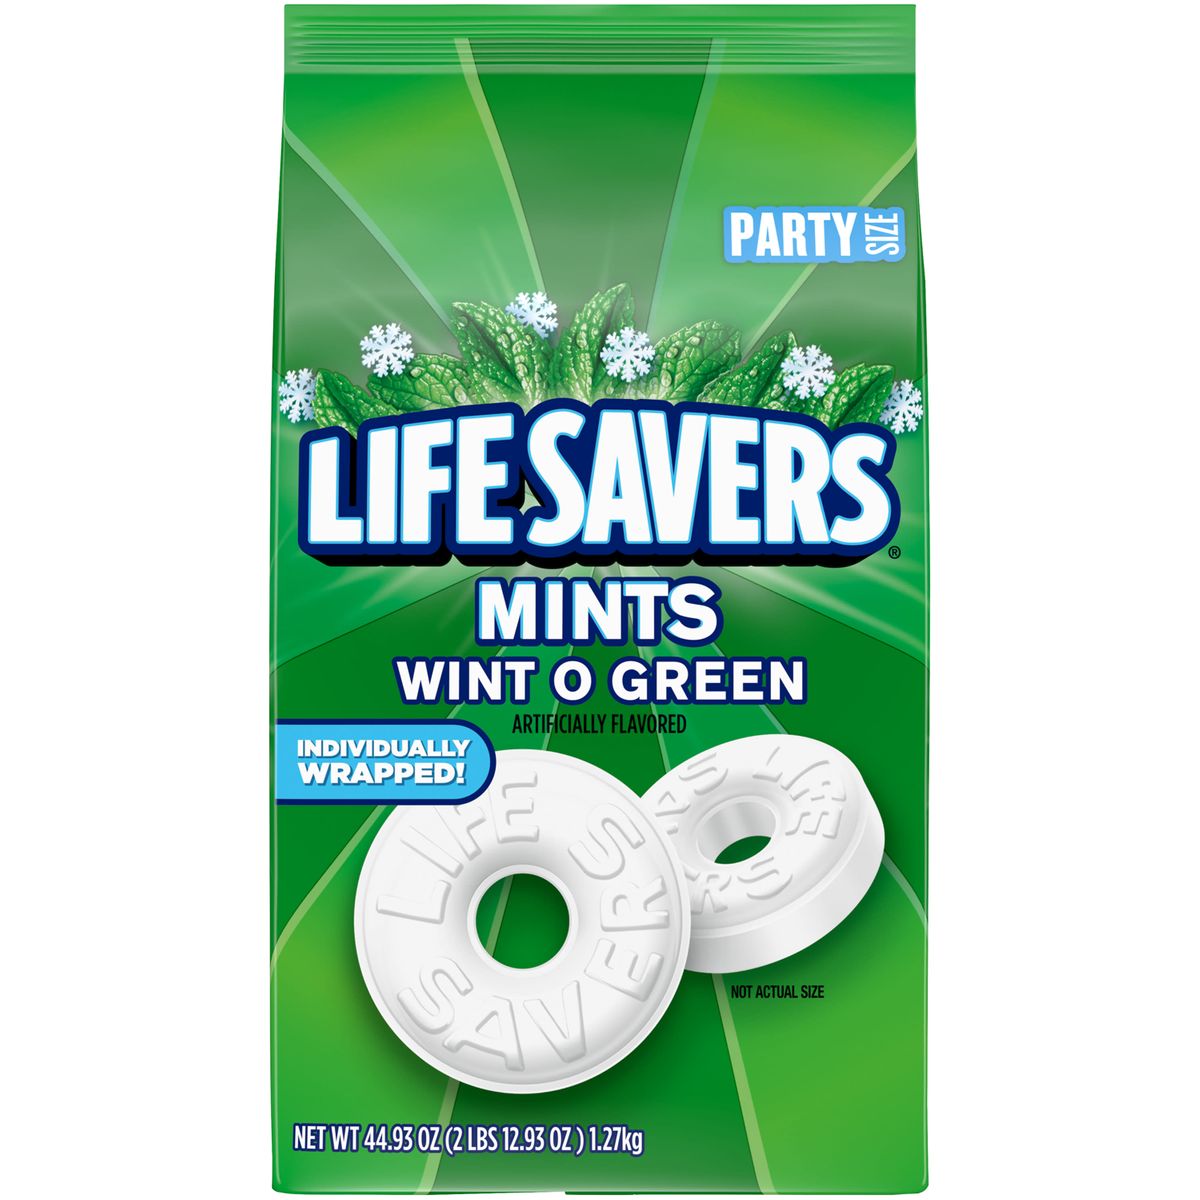 [RDY] [送料無料] Life Savers Wint-O-Green Breath Mint ハードキャンディー パーティーサイズ - 44.93オンス袋 [楽天海外通販] | Life Savers Wint-O-Green Breath Mint Hard Candy, Party Size - 44.93 oz Bag